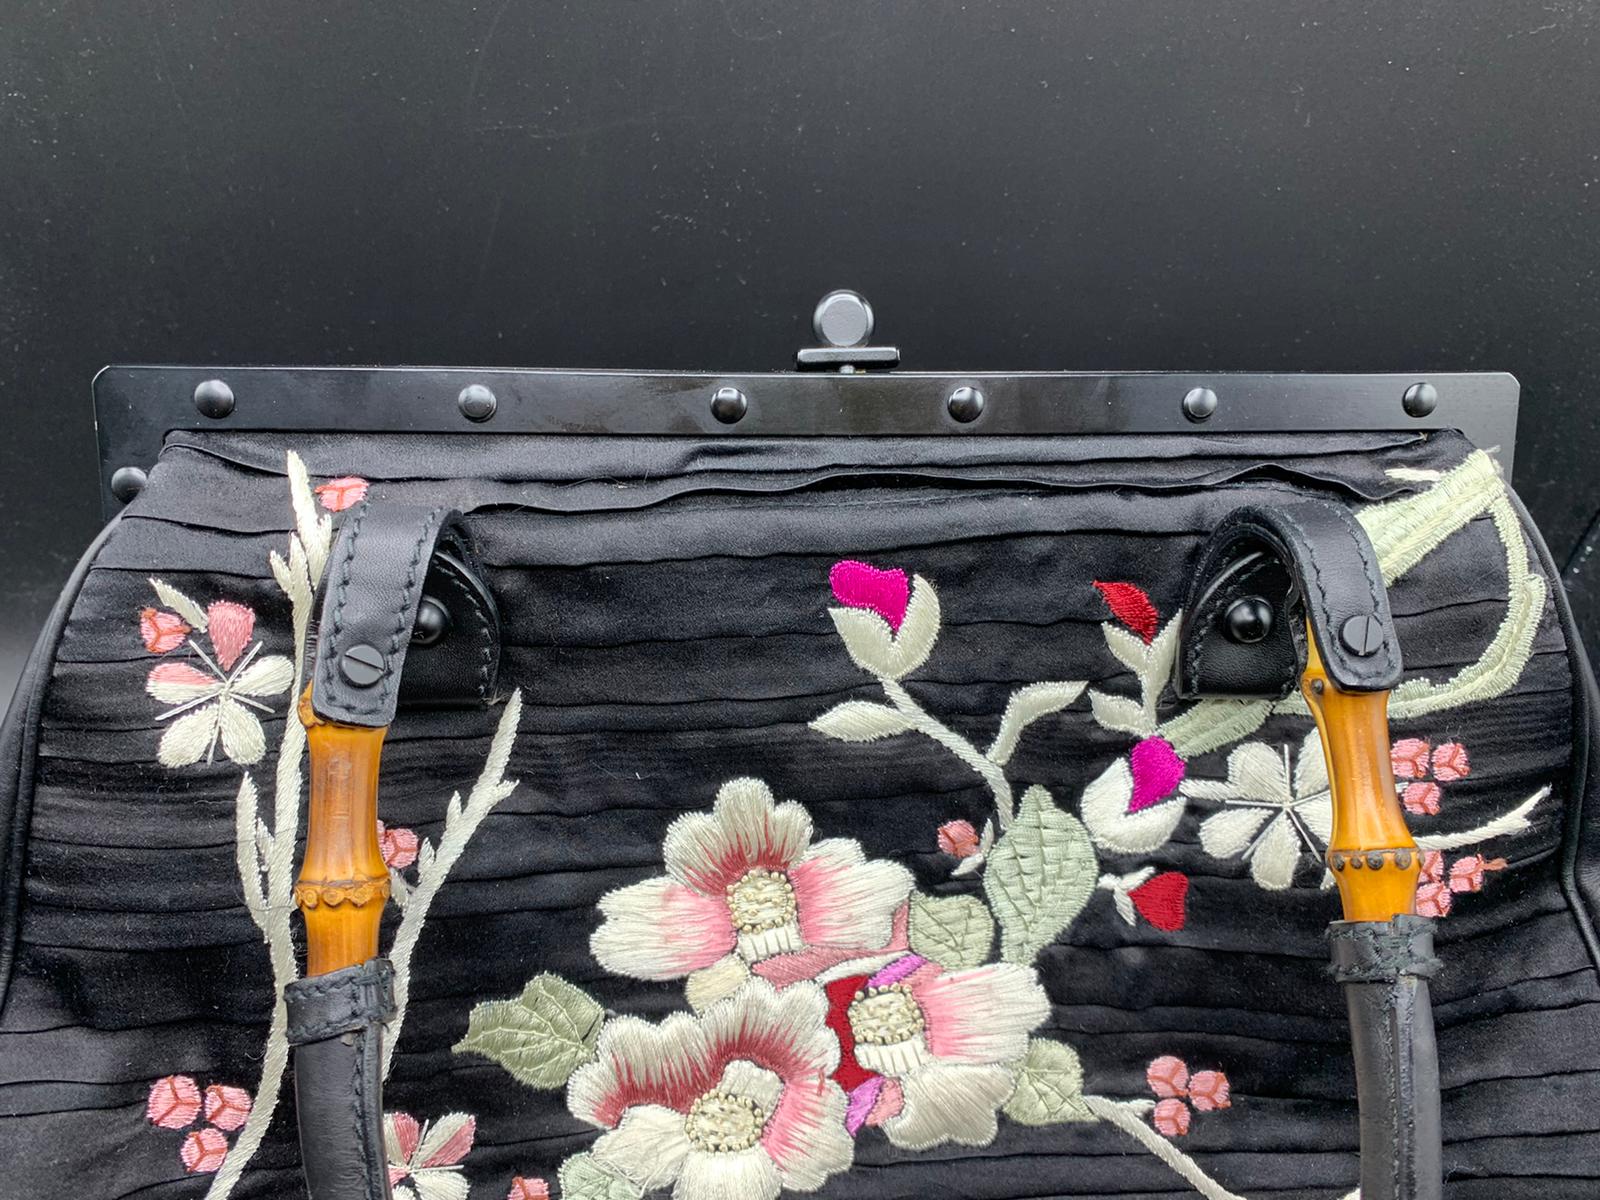 Tom Ford für Gucci Sehr Selten Schwarze Tasche mit japanischen Blumen